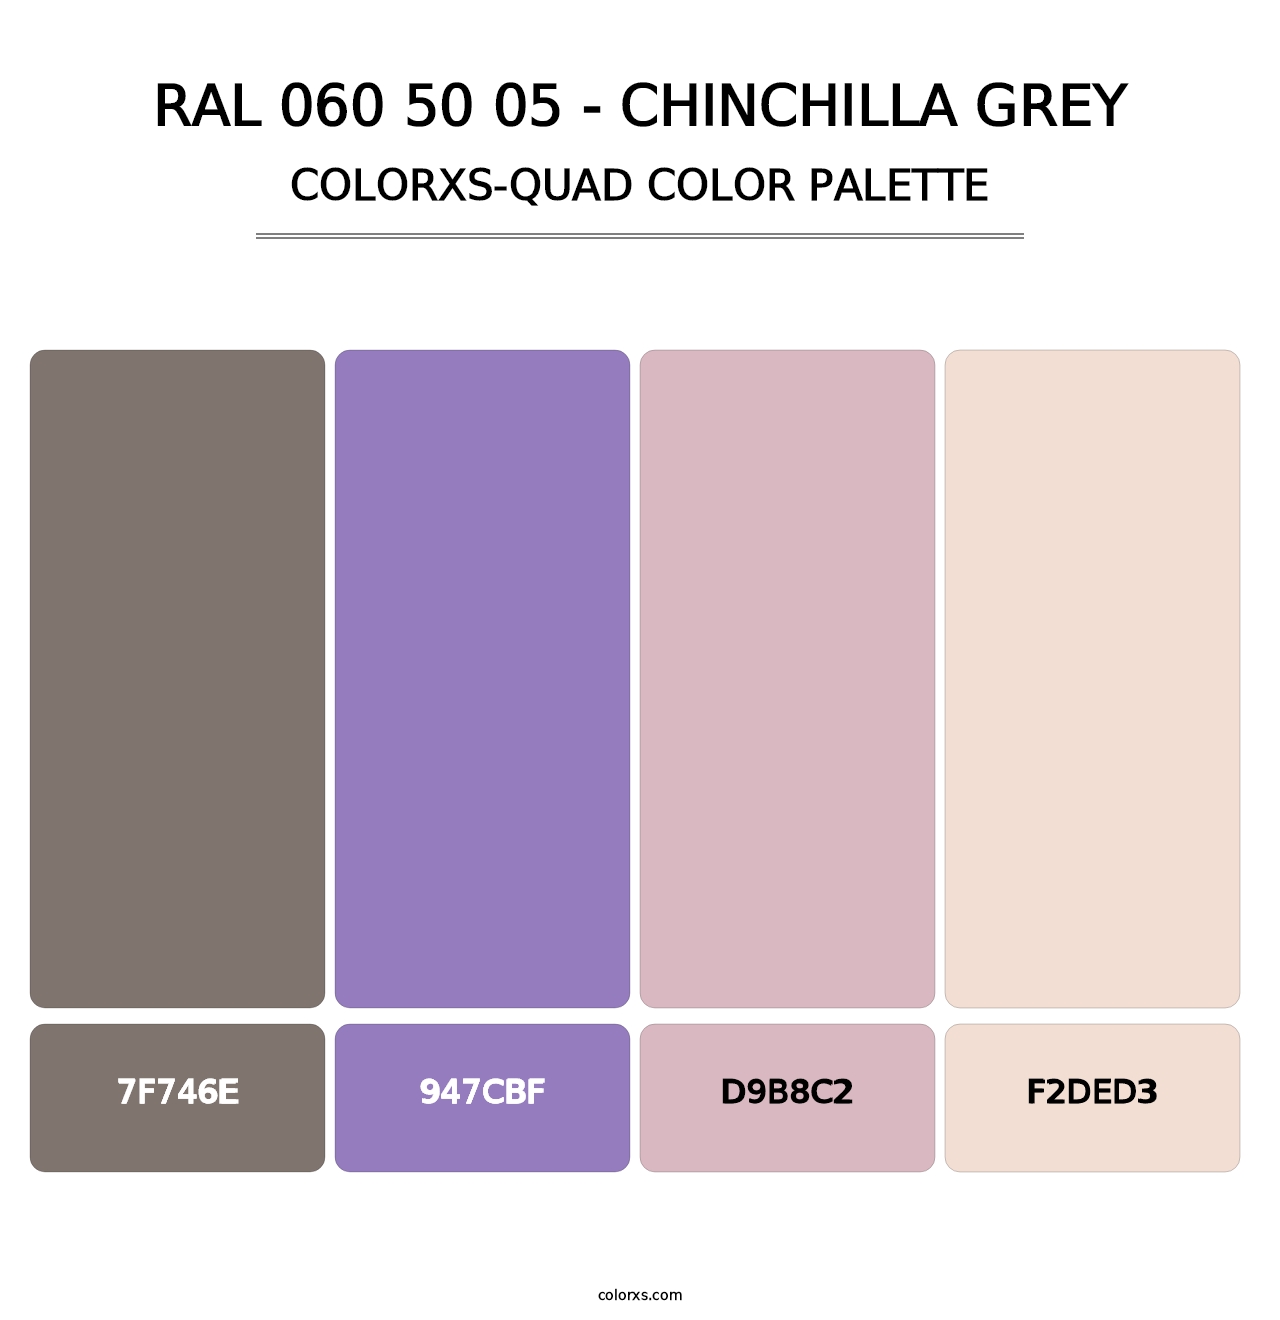 RAL 060 50 05 - Chinchilla Grey - Colorxs Quad Palette